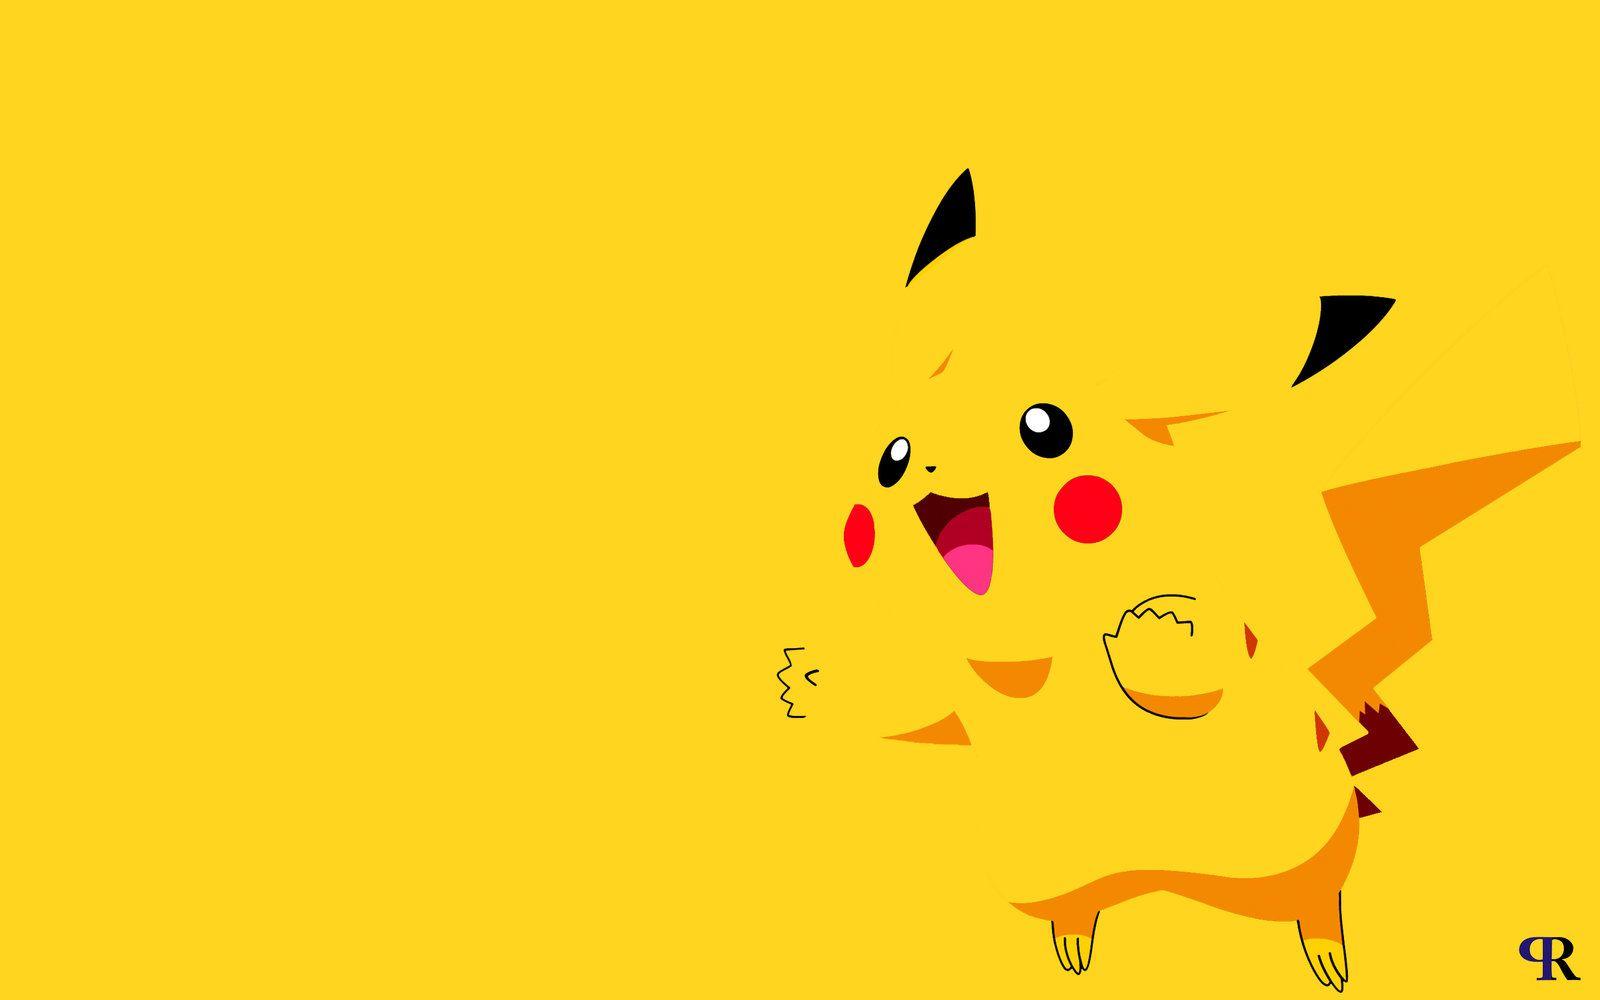 Bạn là fan của Pikachu? Đừng bỏ lỡ cơ hội ngắm nhìn những hình nền Pikachu tuyệt đẹp này. Chú chuột điện đáng yêu sẽ mang lại cho bạn sự tươi trẻ và niềm vui.